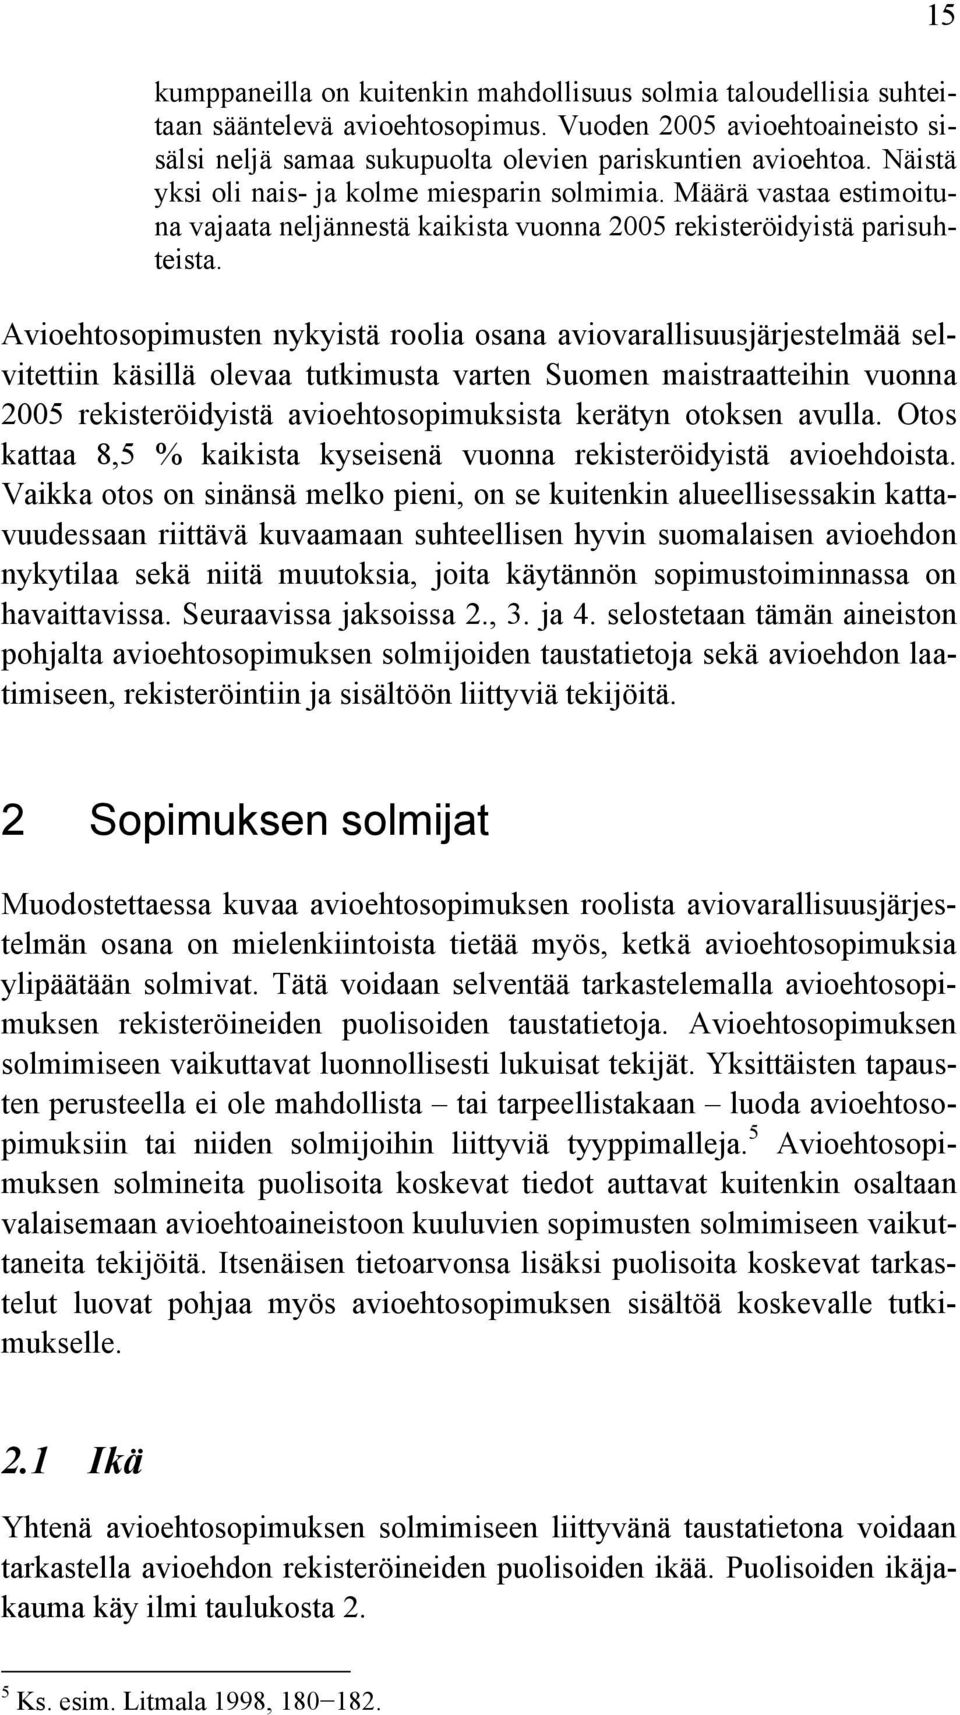 Avioehtosopimusten nykyistä roolia osana aviovarallisuusjärjestelmää selvitettiin käsillä olevaa tutkimusta varten Suomen maistraatteihin vuonna 2005 rekisteröidyistä avioehtosopimuksista kerätyn